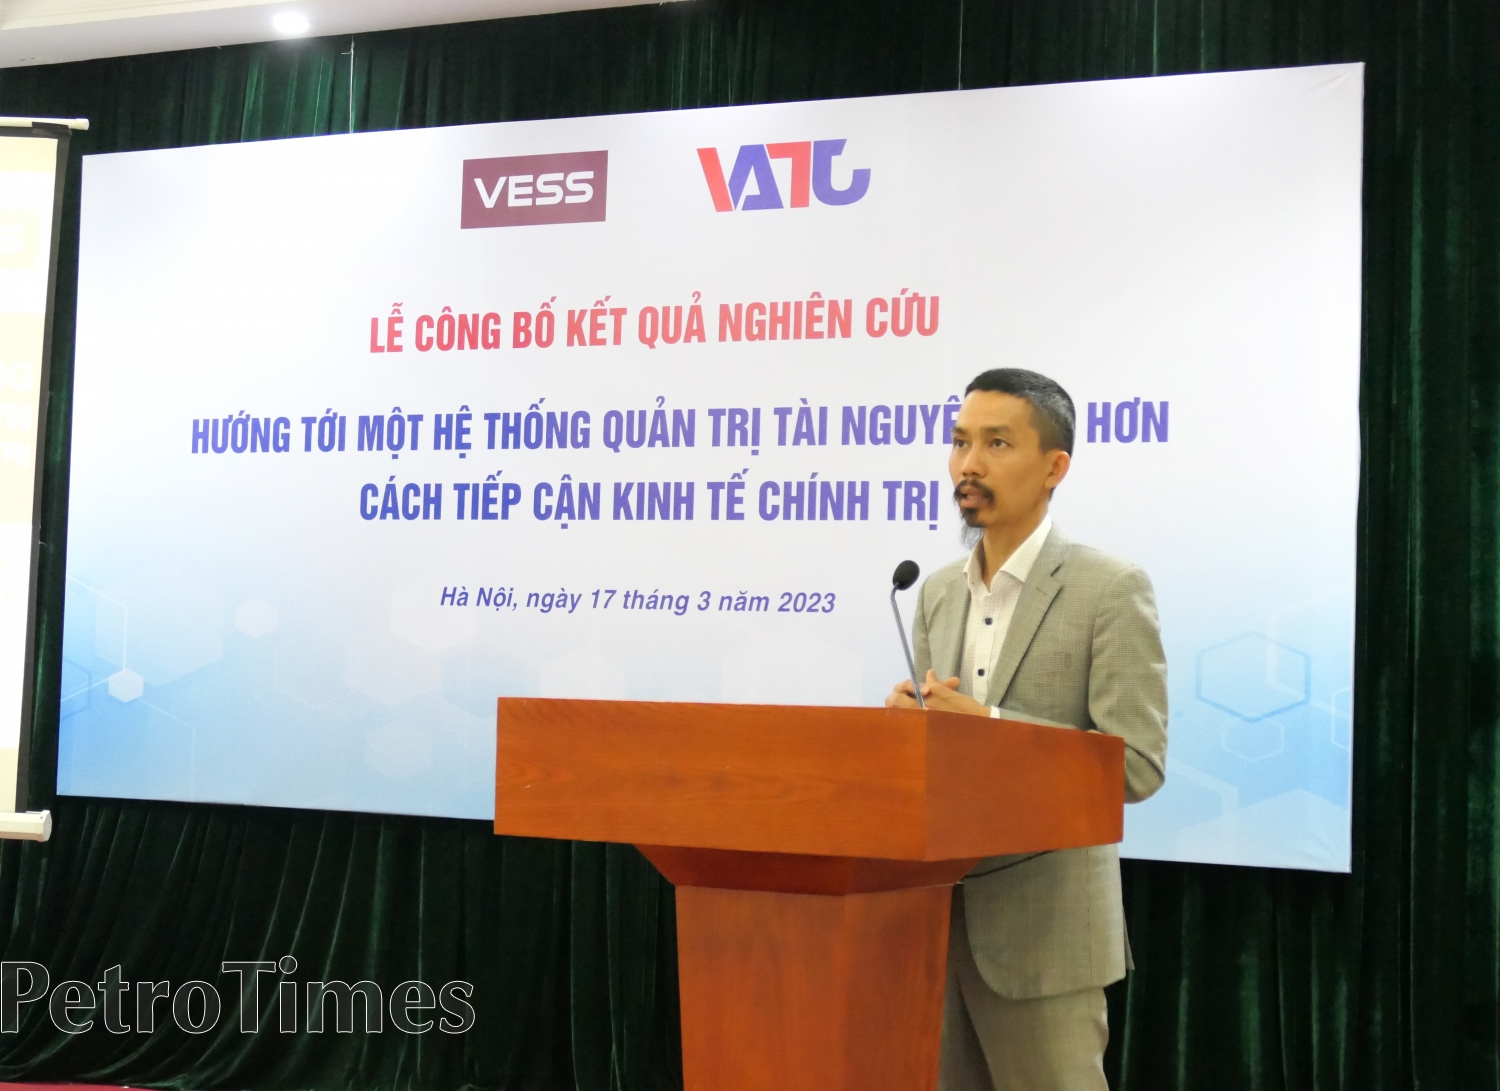 VESS: Hướng tới một hệ thống quản trị tài nguyên tốt hơn trong ngành khai khoáng Việt Nam